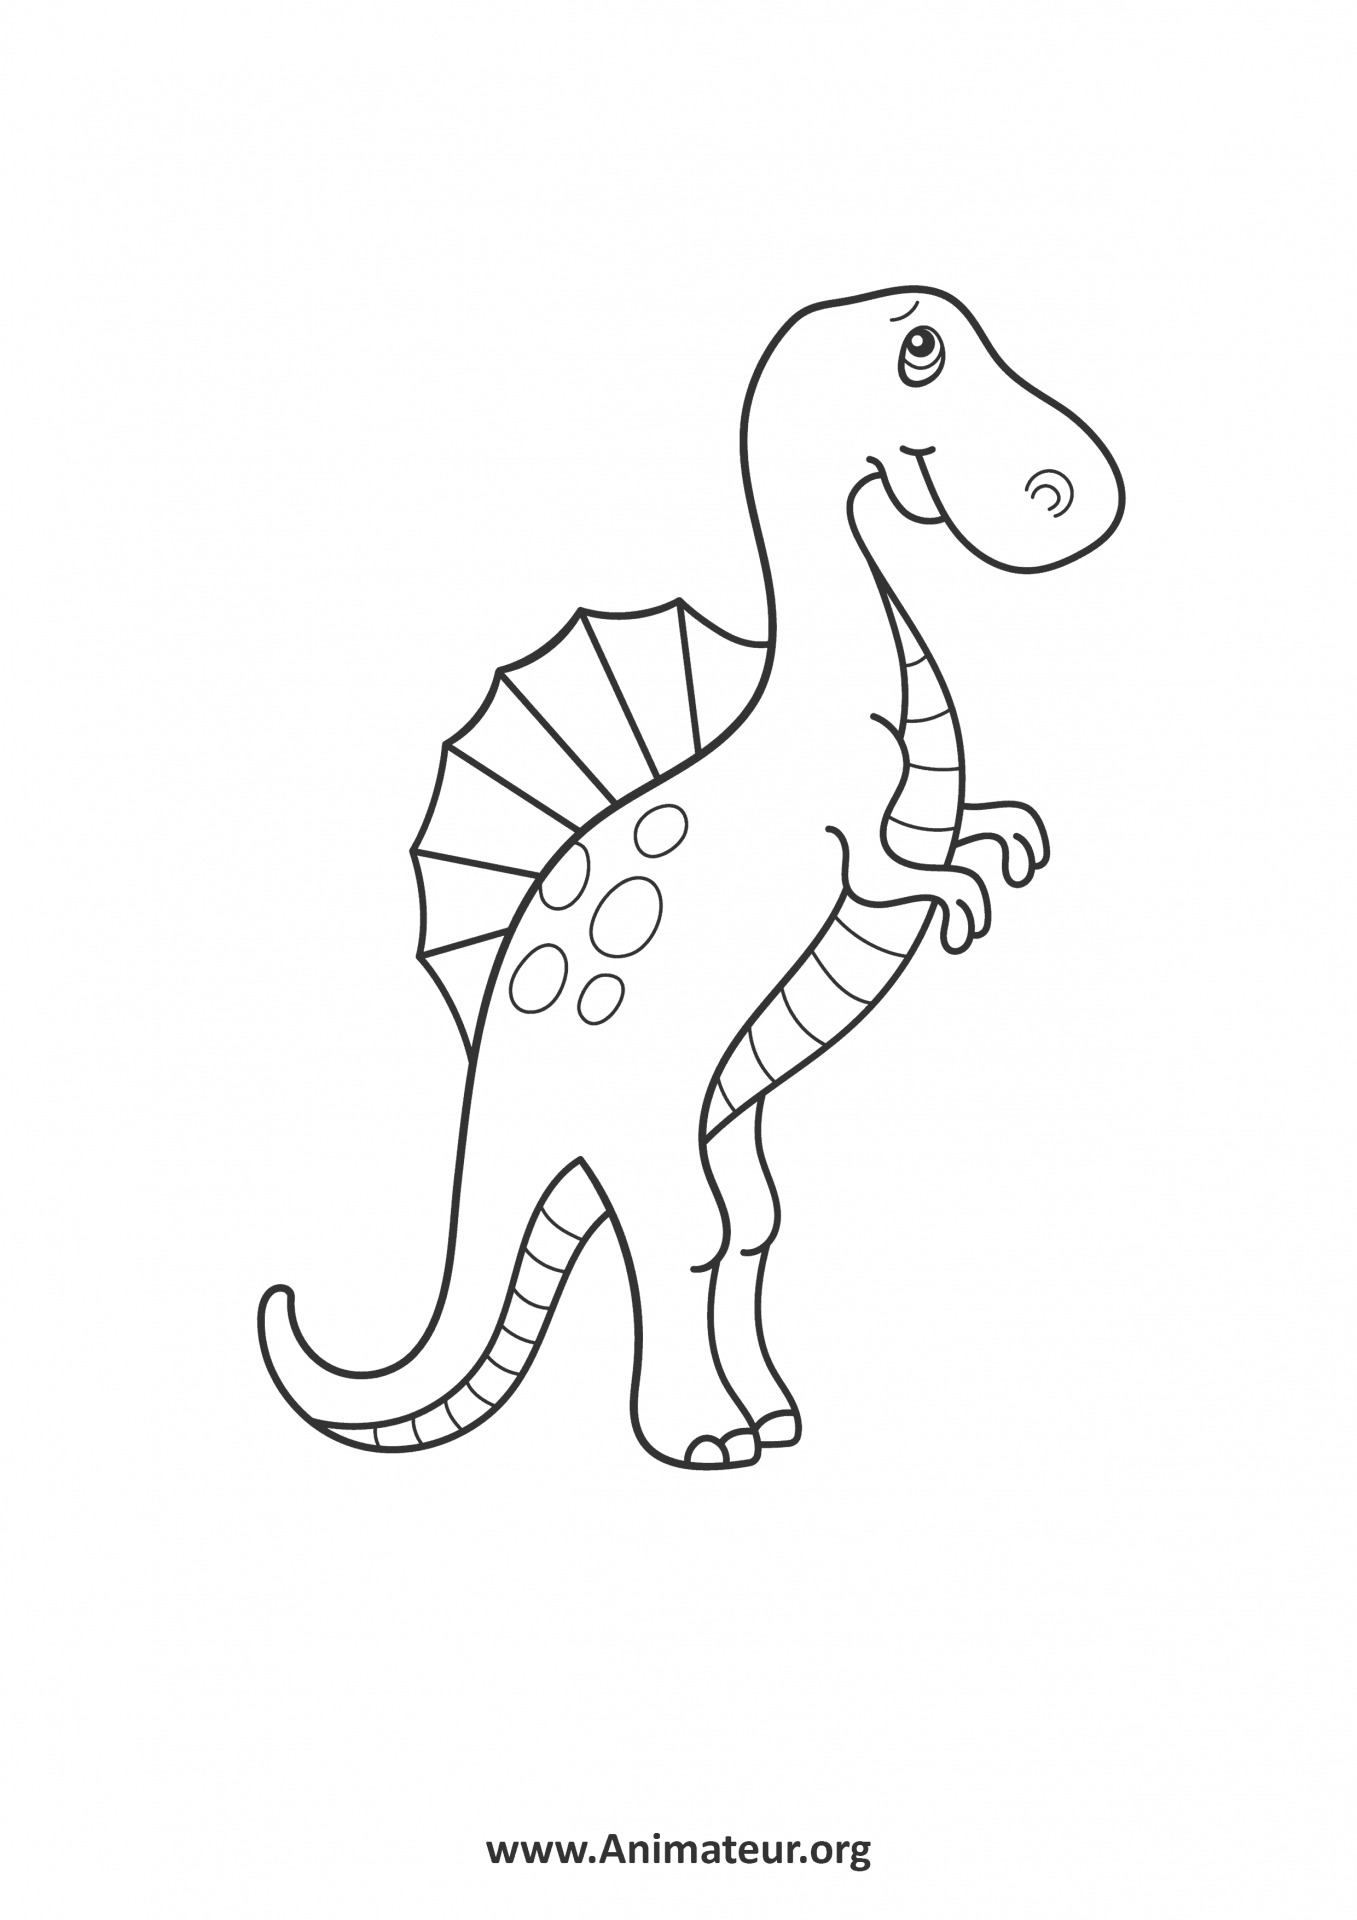 Coloriages De Dinosaures À Imprimer Gratuitement Pour Les dedans Coloriage De Dinosaure A Imprimer